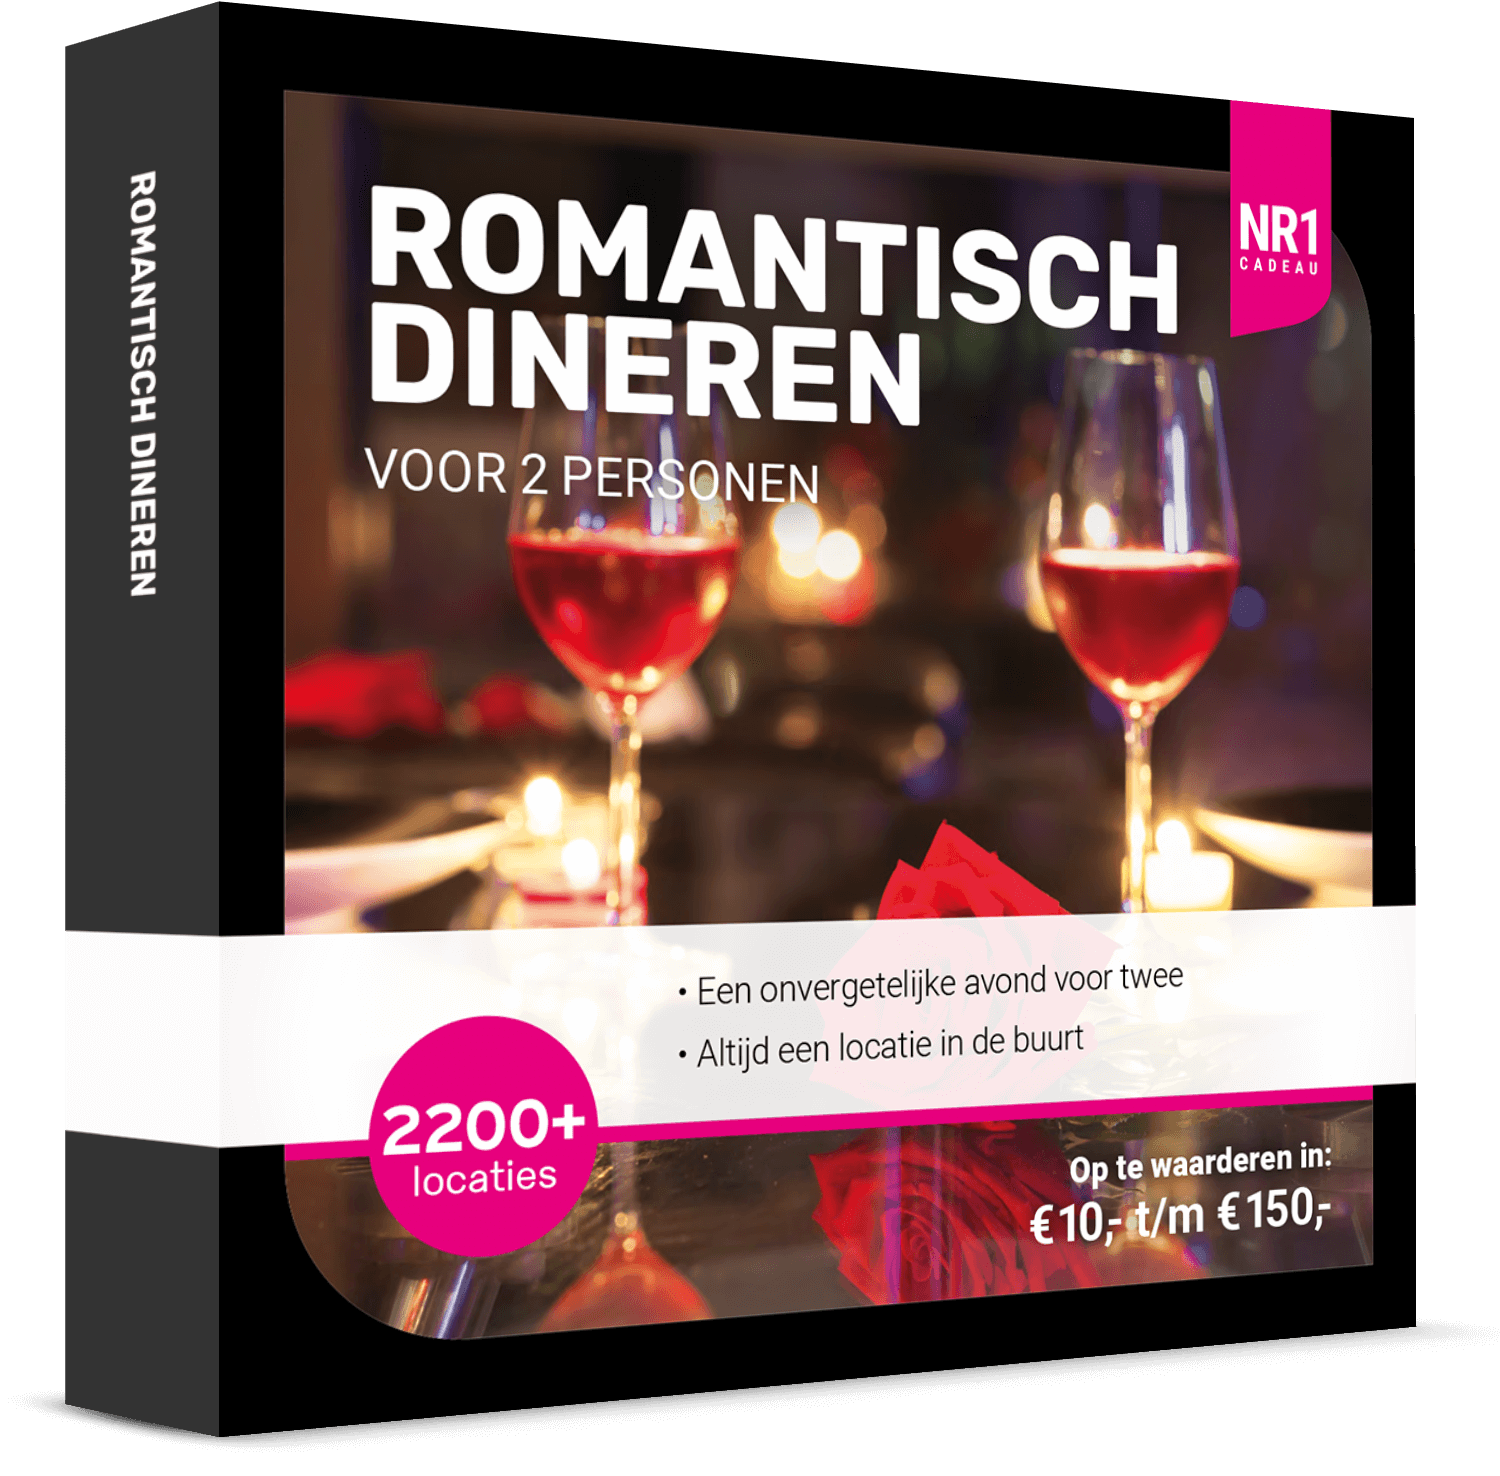 NR1 Romantisch Dineren